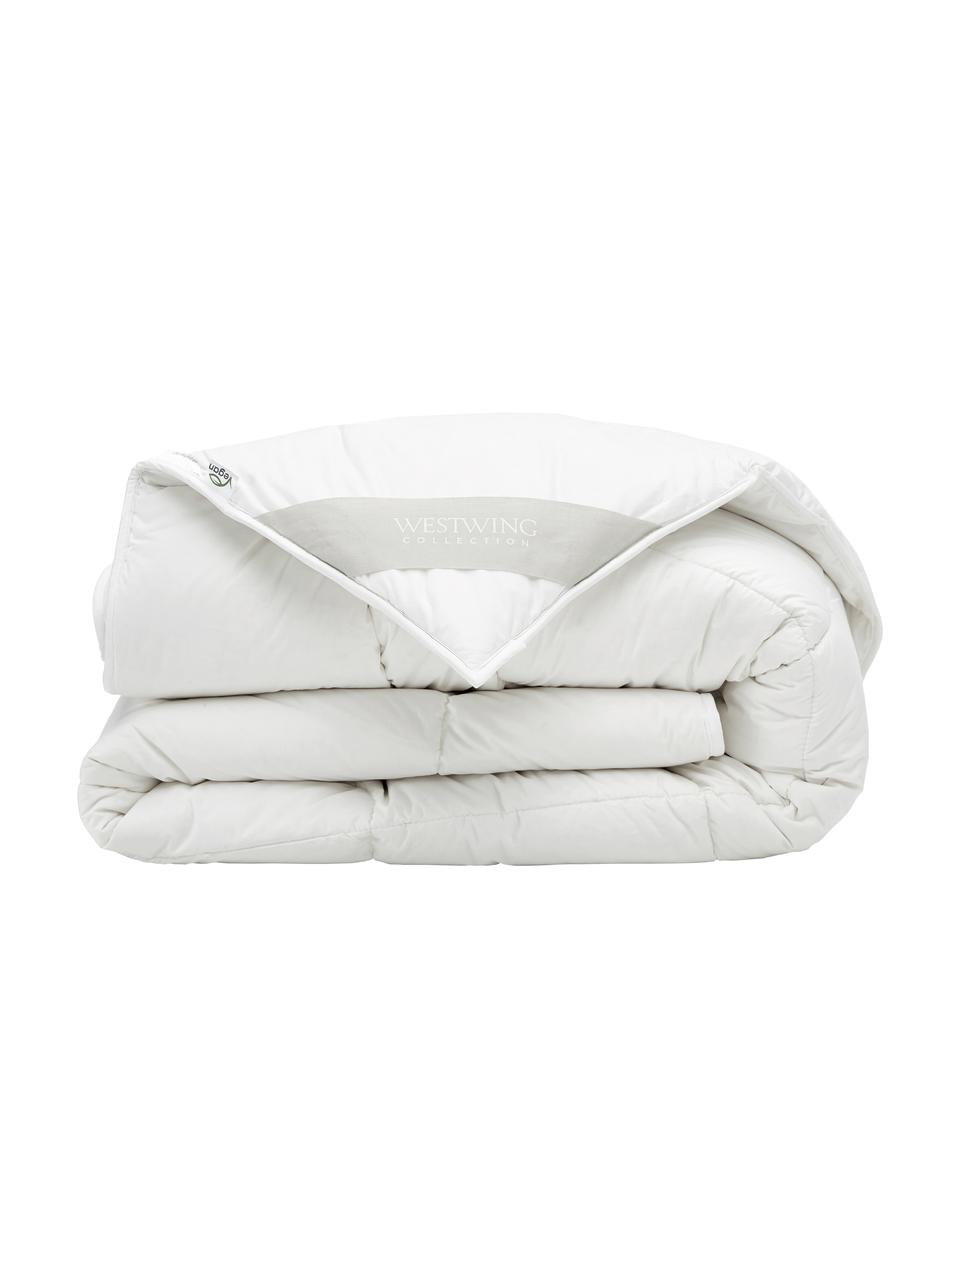 Vegane Bettdecke mit Kapokfaser und Baumwolle, warm, Bezug: 100% Baumwolle, Weiss, 240 x 220 cm